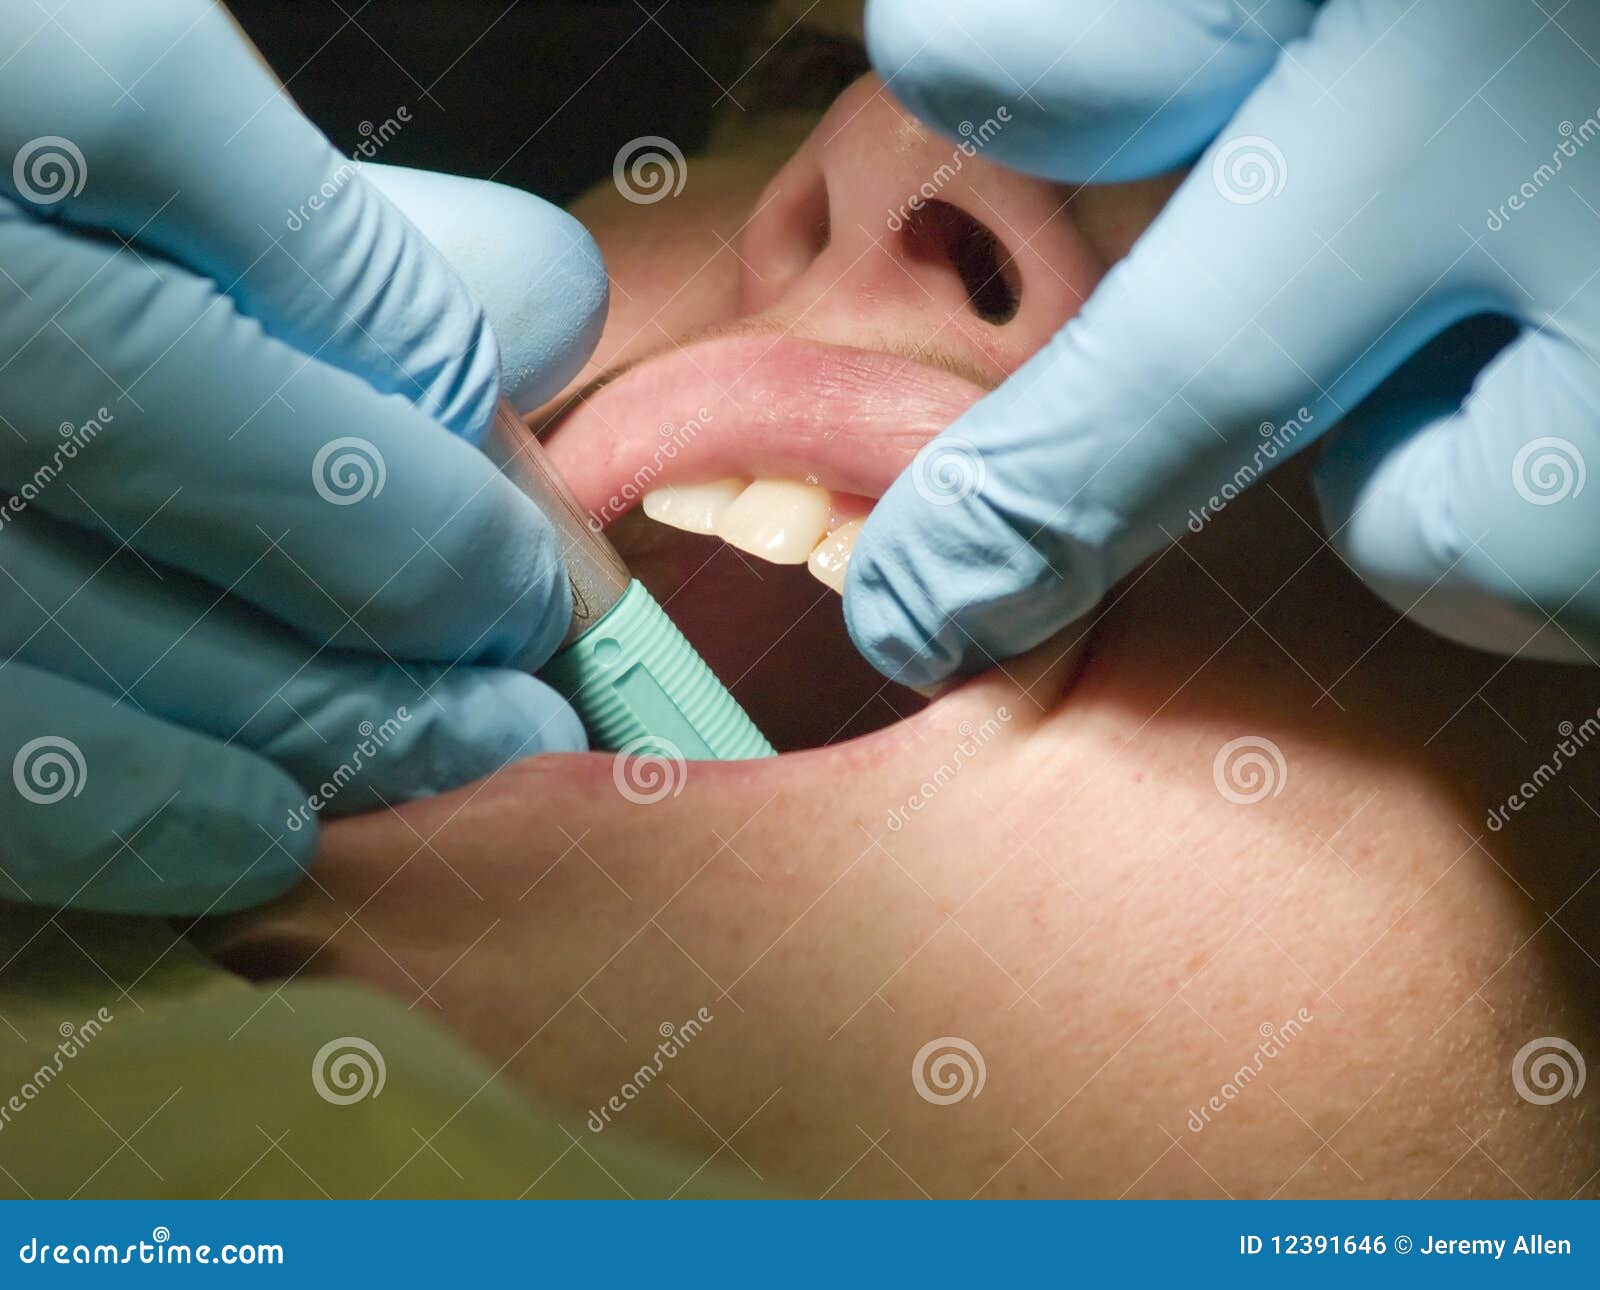 Raum-Check. Eine Nahaufnahme eines zahnmedizinischen hygenist, das die Zähne eines Patienten auf caivties überprüft.